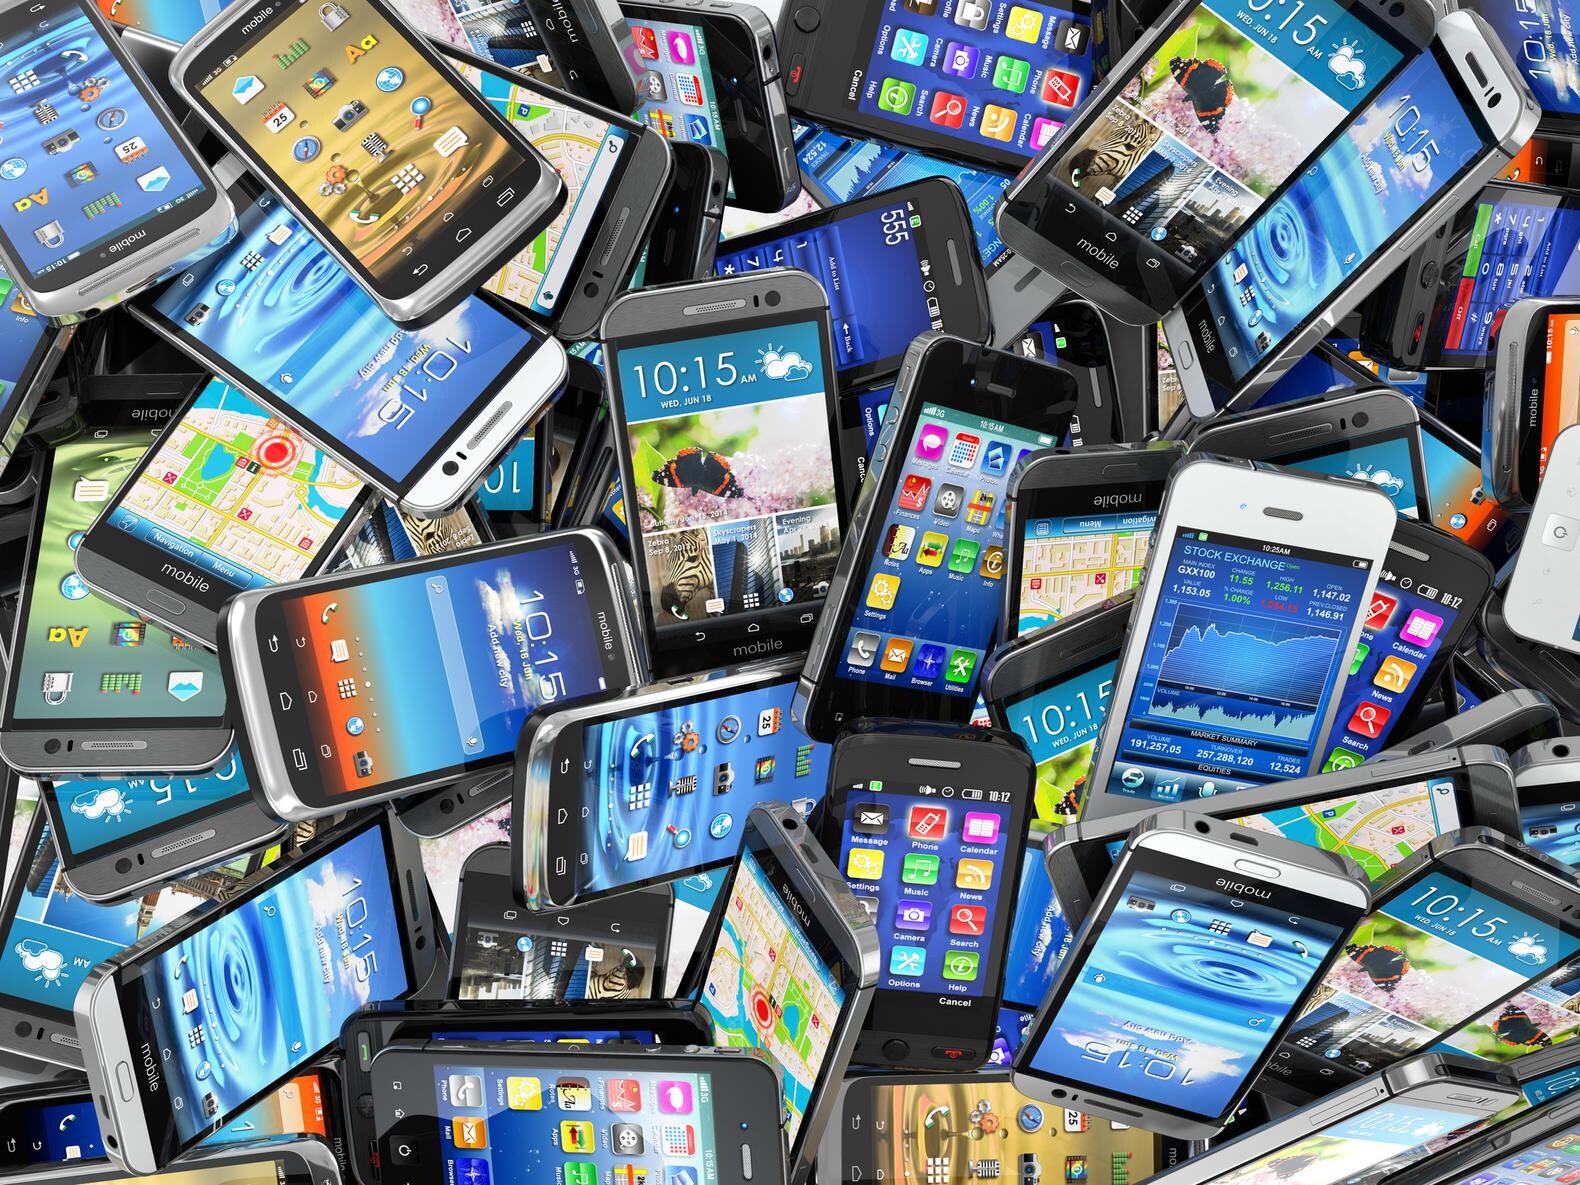 "Toestellen van Samsung, Apple en Microsoft steeds moeilijker te herstellen"